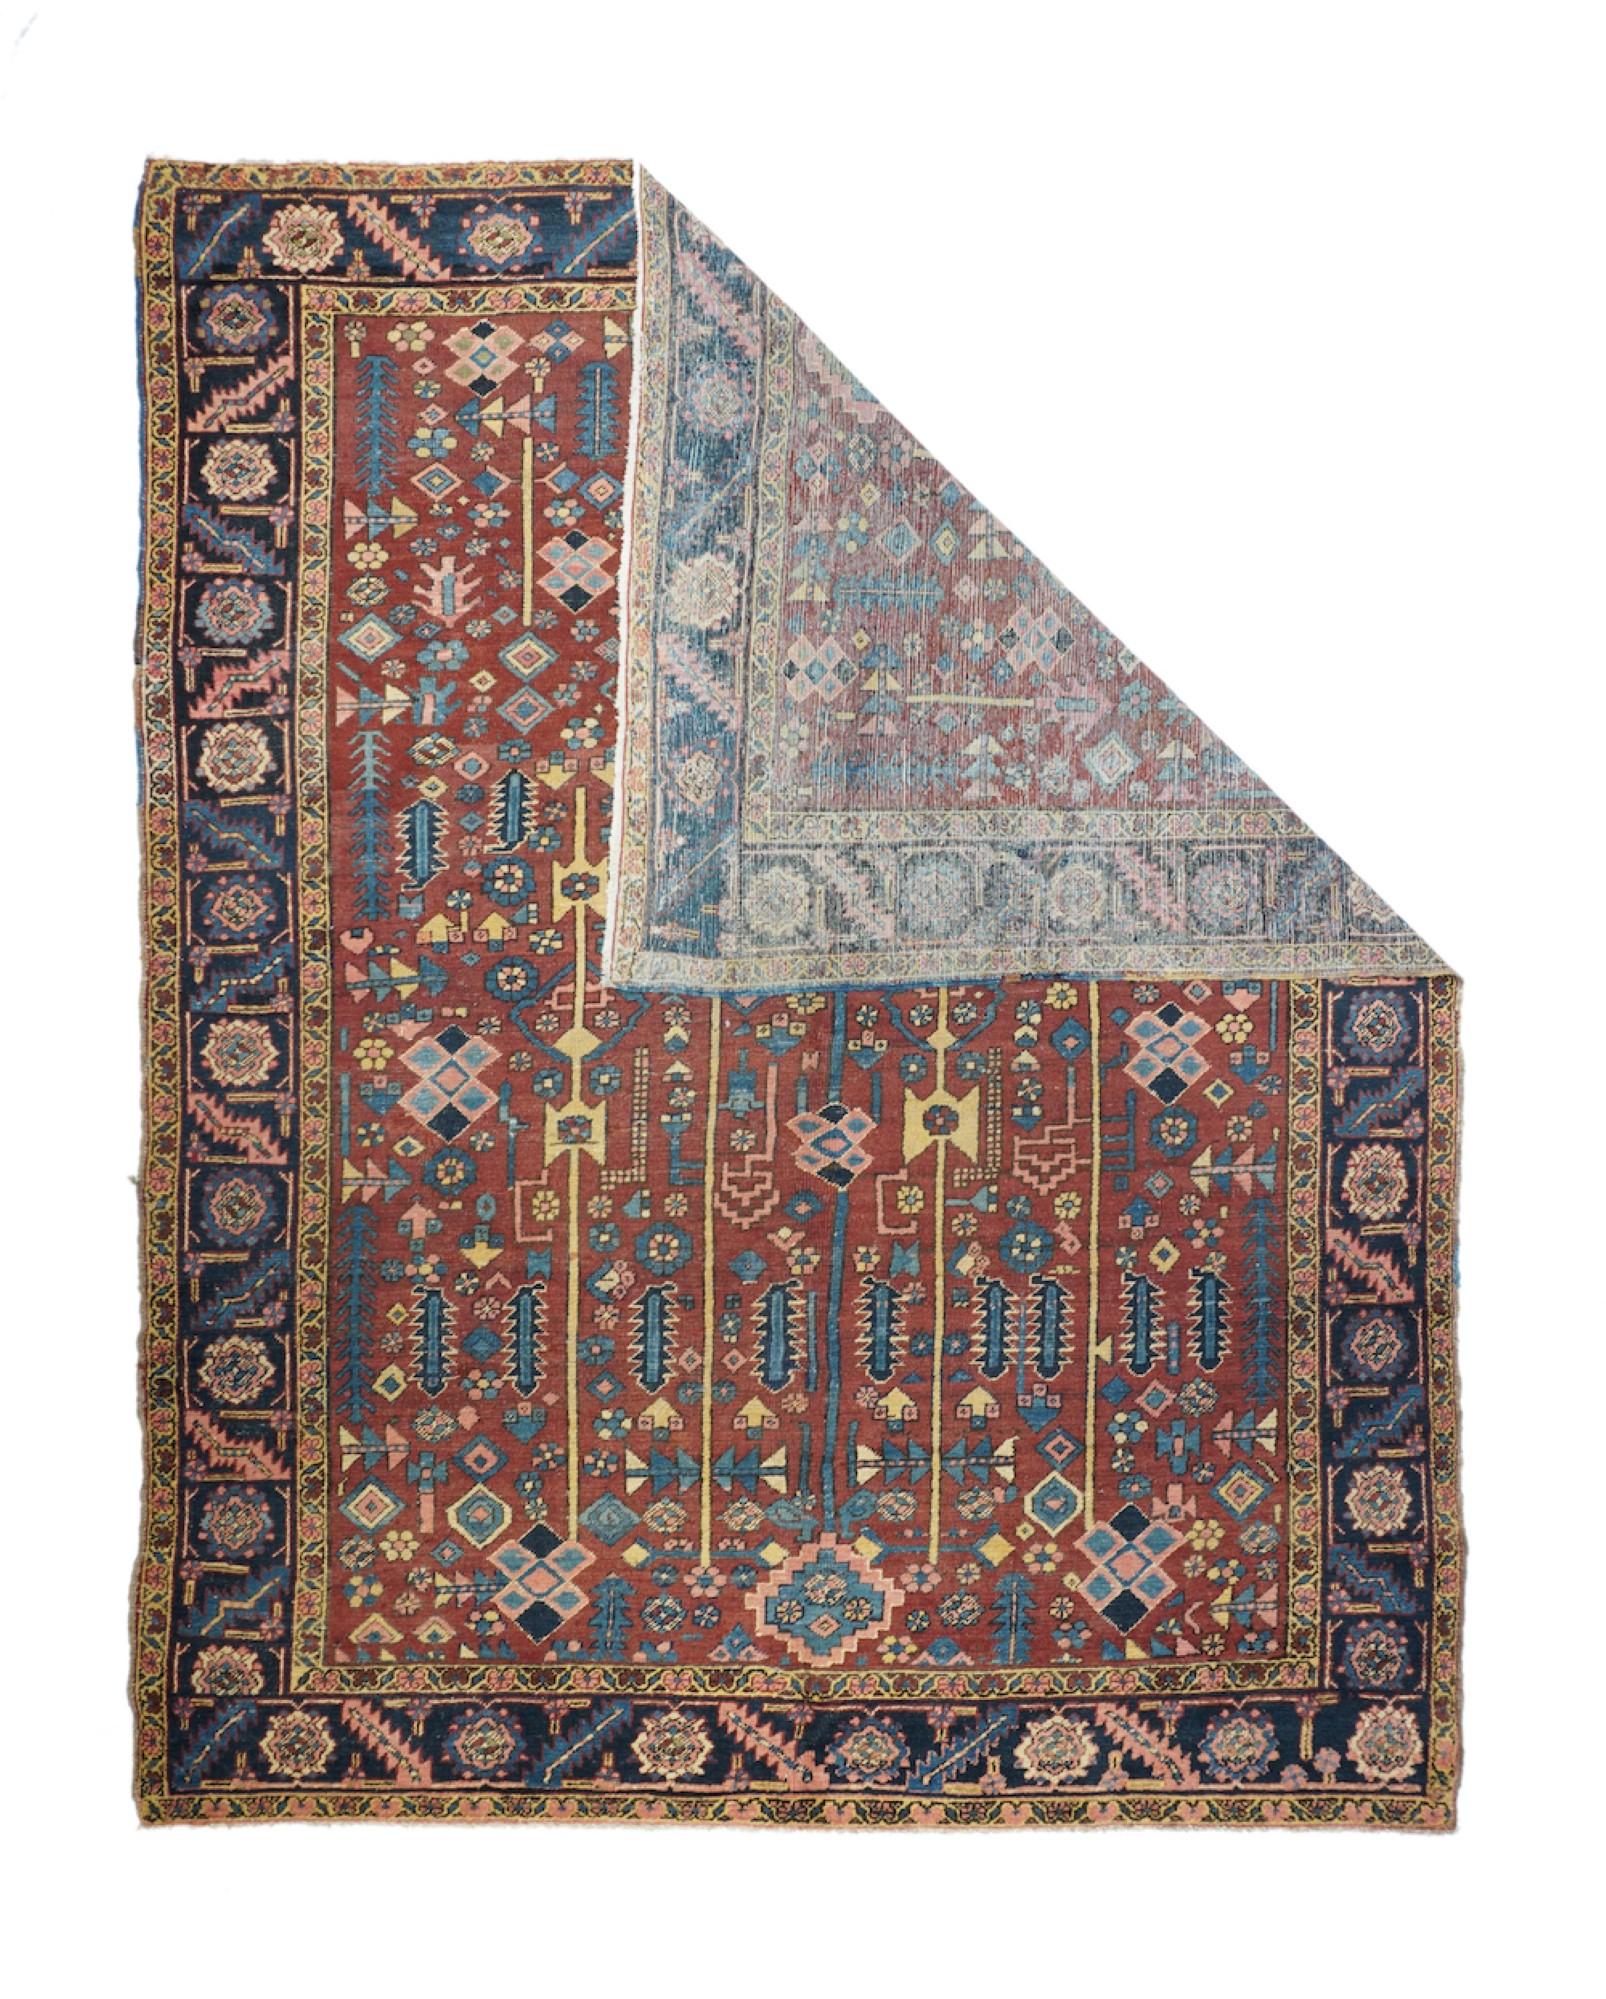 Antique Heriz rug, measures: 9'1'' x 11'2''.